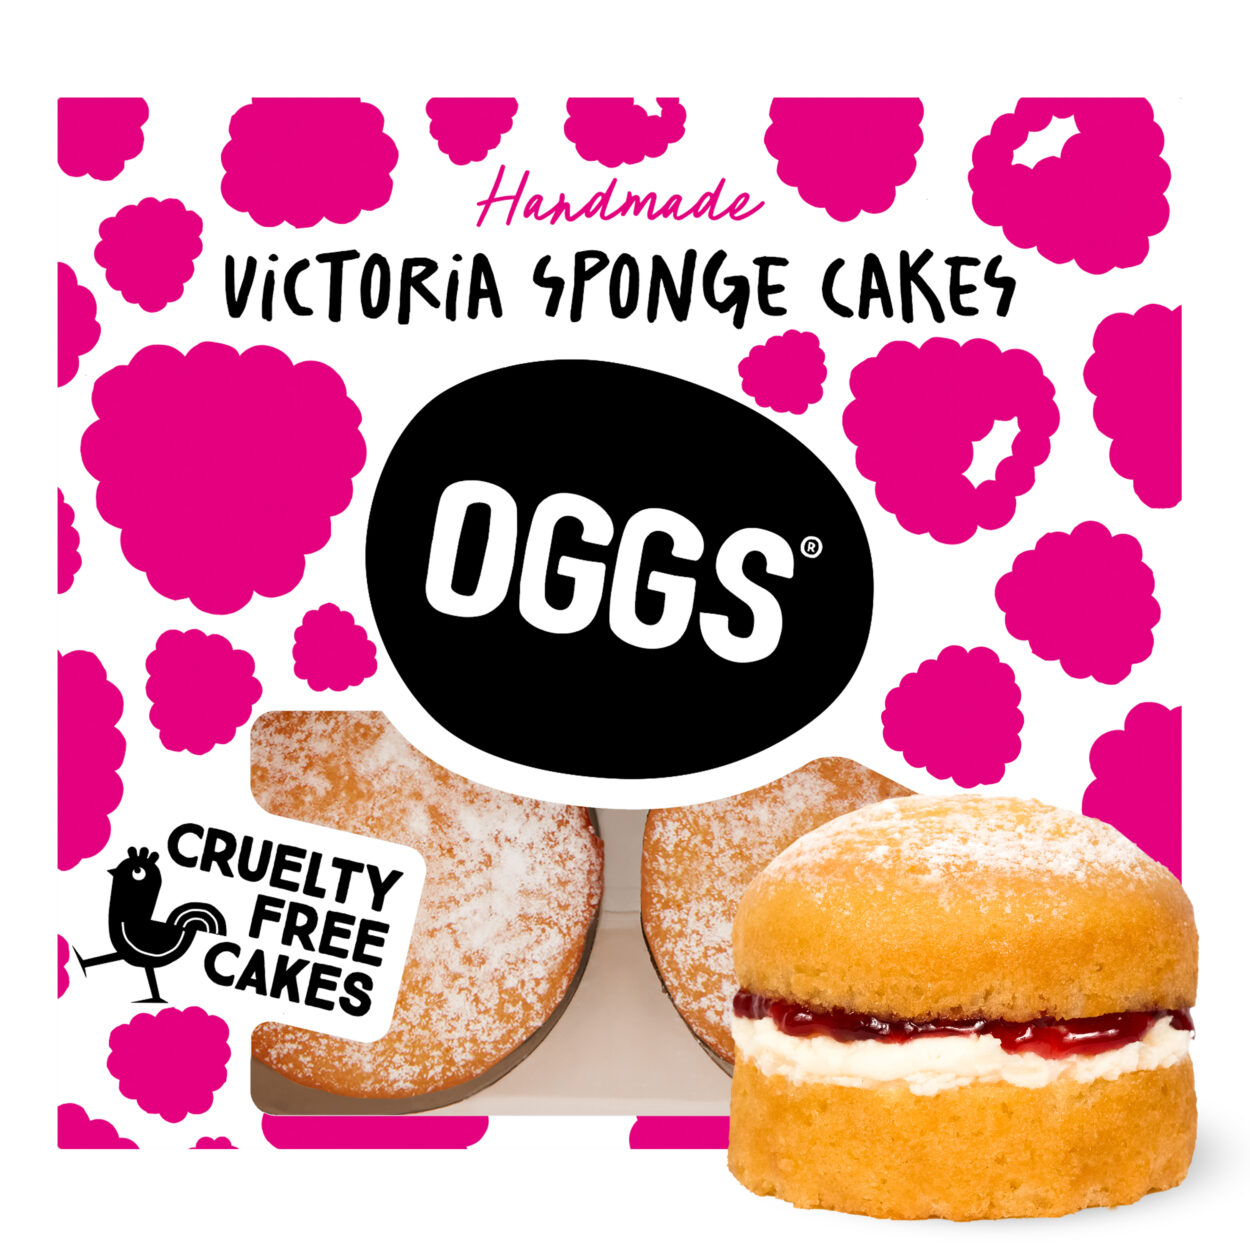 Victoria Sponge Cakes